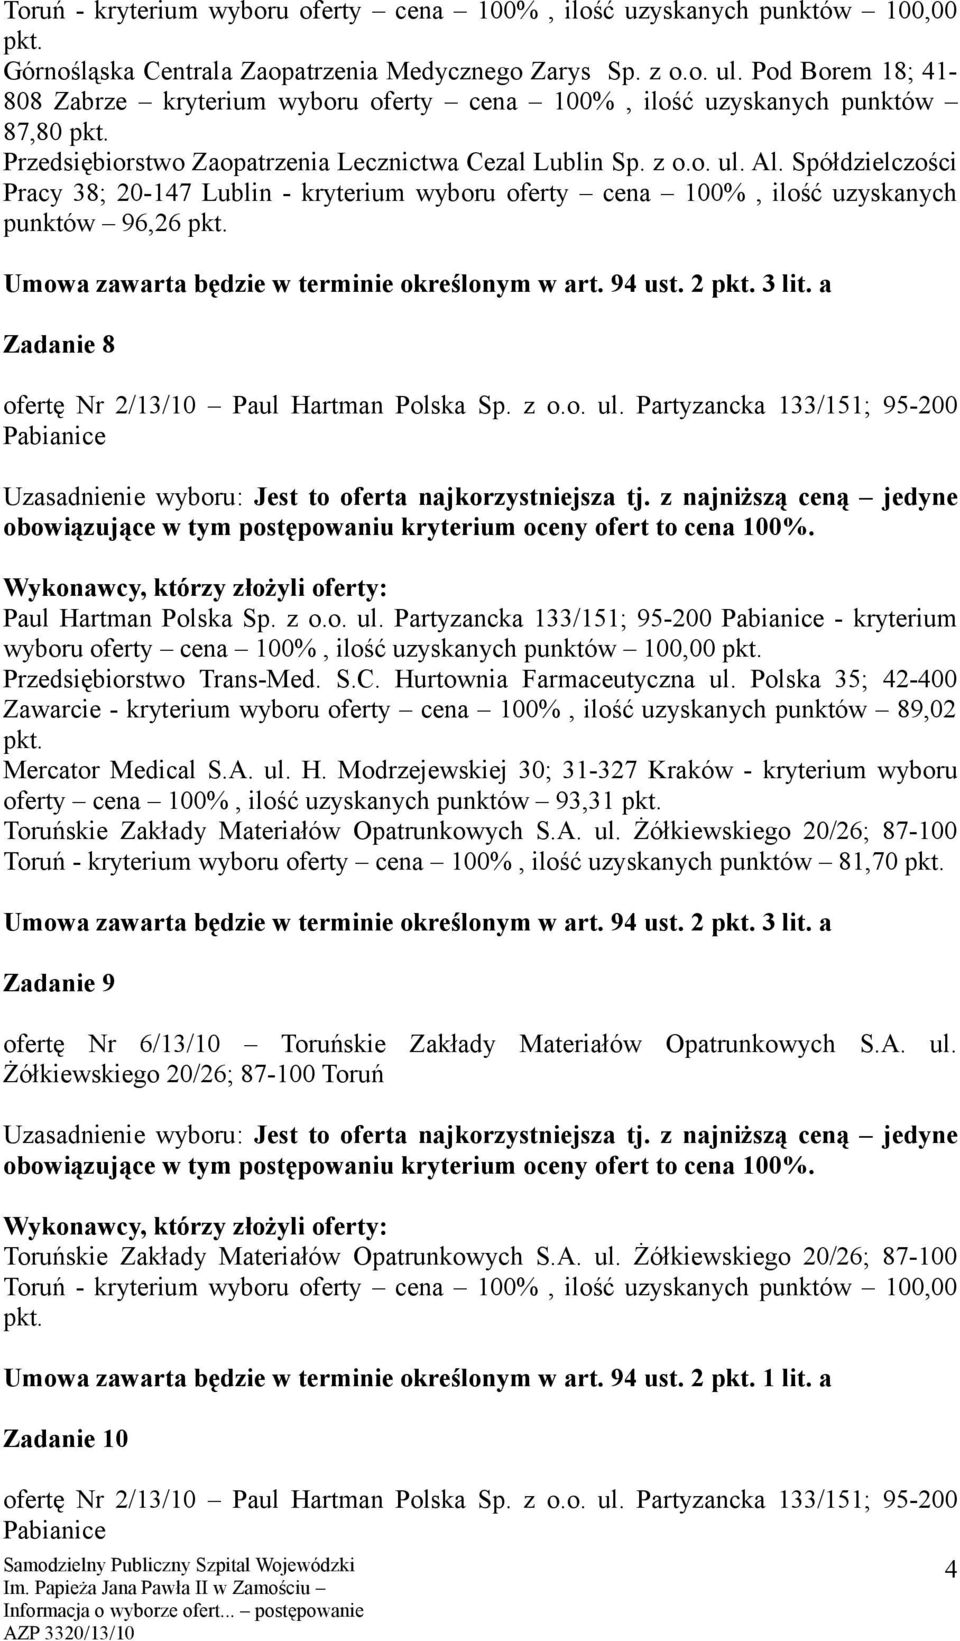 Polska 35; 42-400 Zawarcie - kryterium wyboru oferty cena 100%, ilość uzyskanych punktów 89,02 Mercator Medical S.A. ul. H.